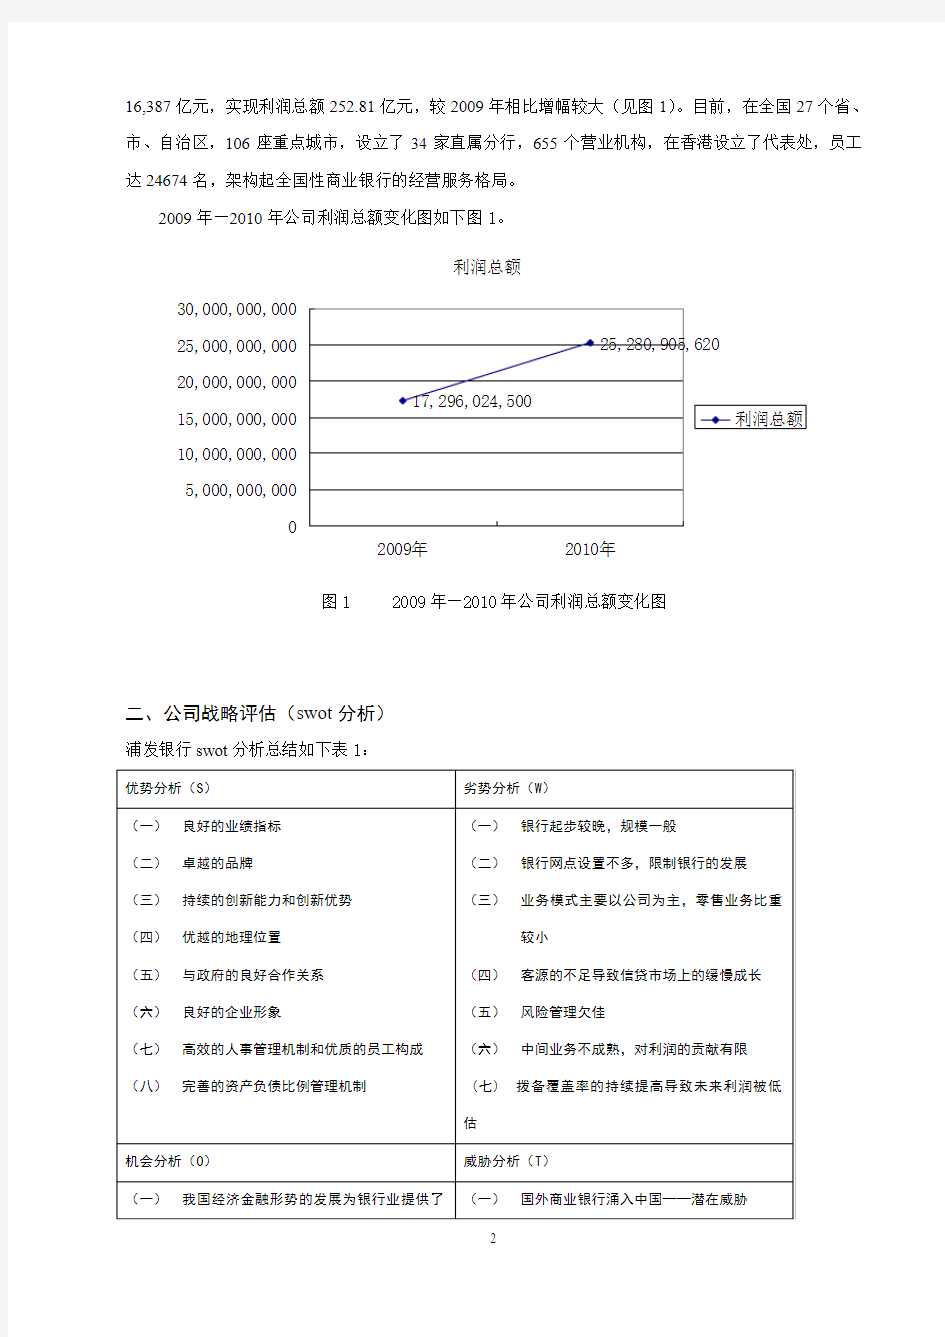 关于上海浦东发展银行股份有限公司600000的战略选择与风险应对策略分析报告